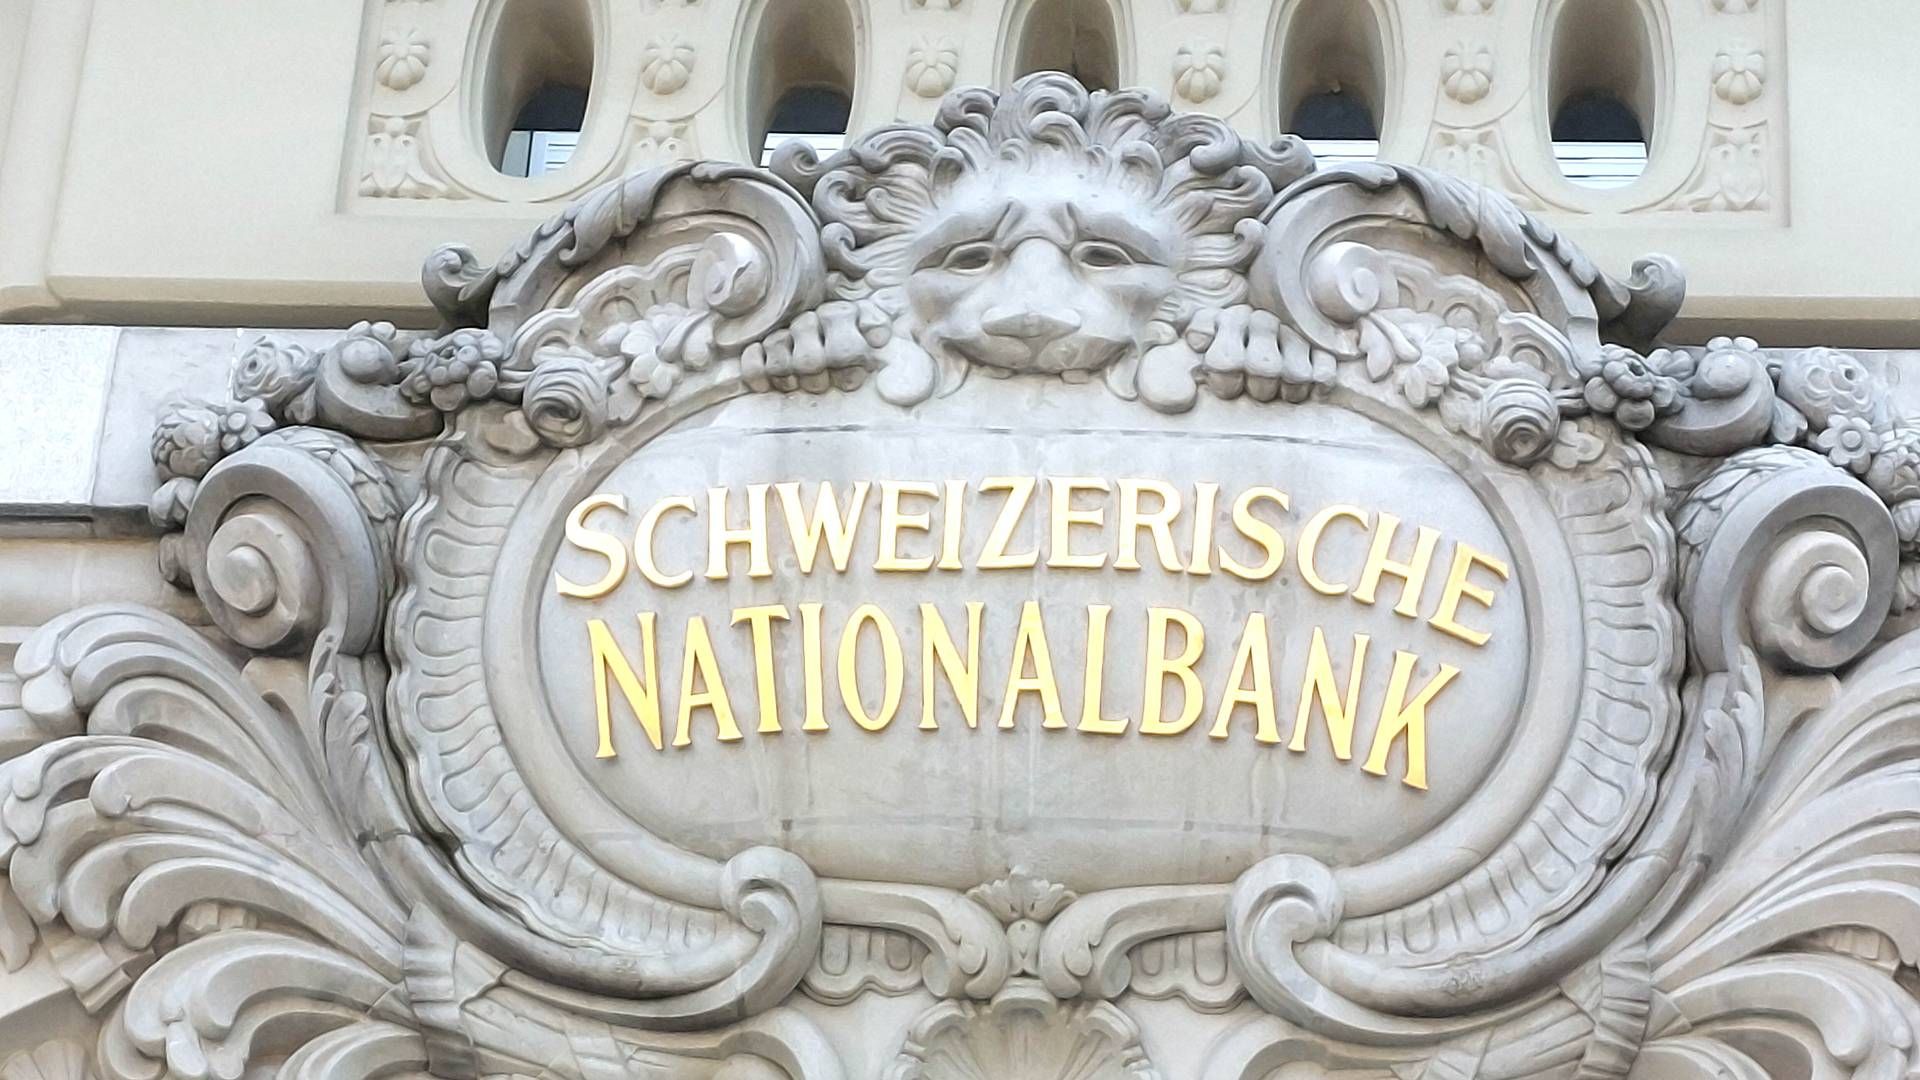 Reiht sich ein in die Gruppe der Banken, die digitales Zentralbank testen: Die Schweizerische Nationalbank. | Foto: picture alliance / Eibner-Pressefoto | Fleig / Eibner-Pressefoto